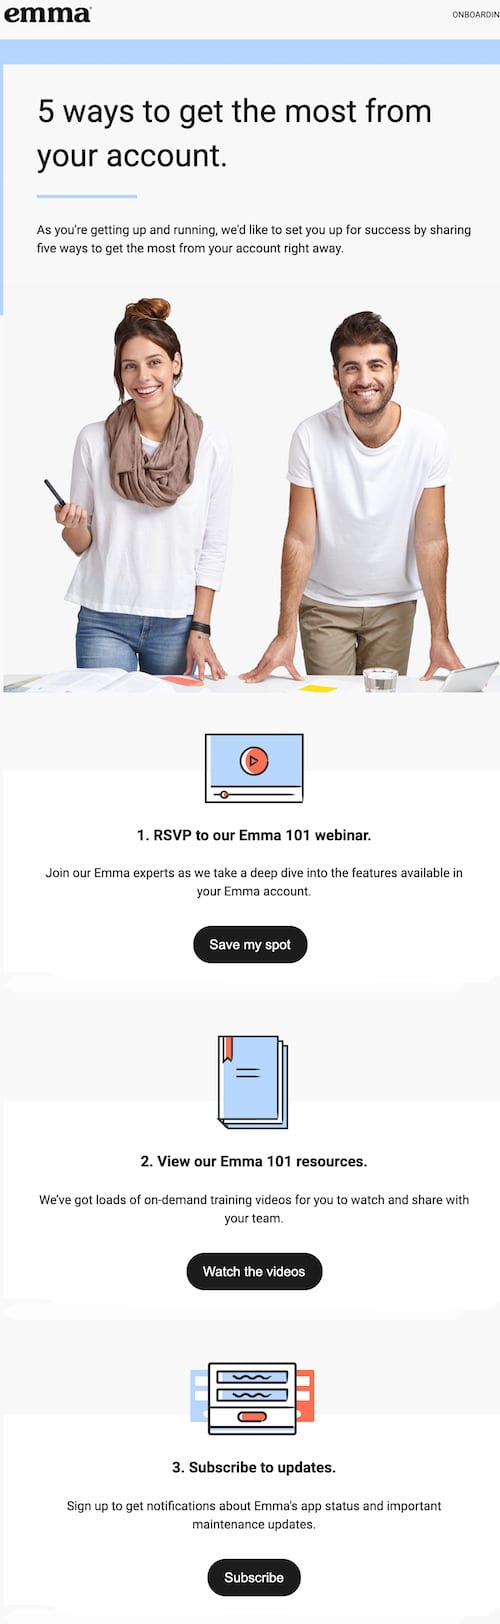 مثال على البريد الإلكتروني المستند إلى المحتوى: في ما يلي مثال على البريد الإلكتروني الآلي المستند إلى المحتوى لـ Emma.